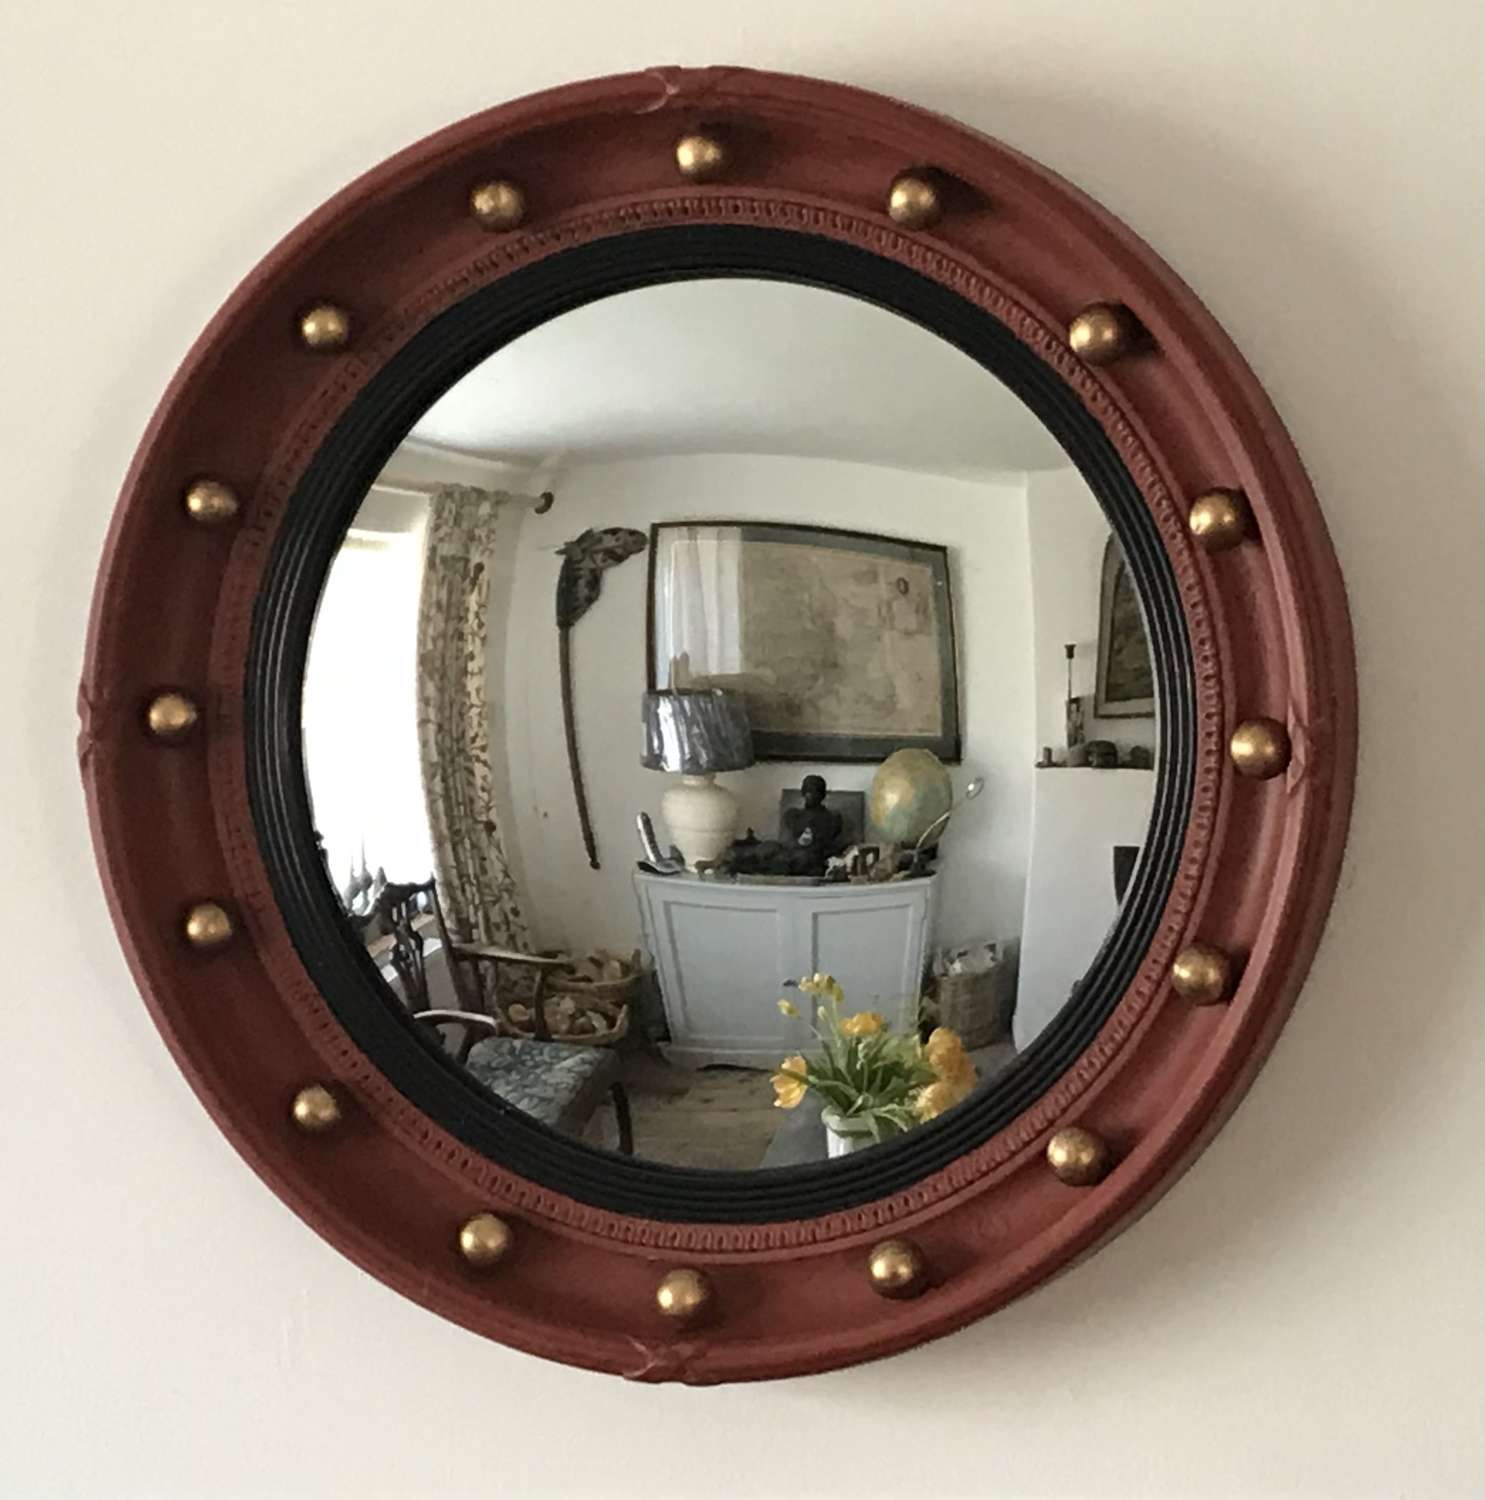 1930s Regency revival circular mirror by Atsonea